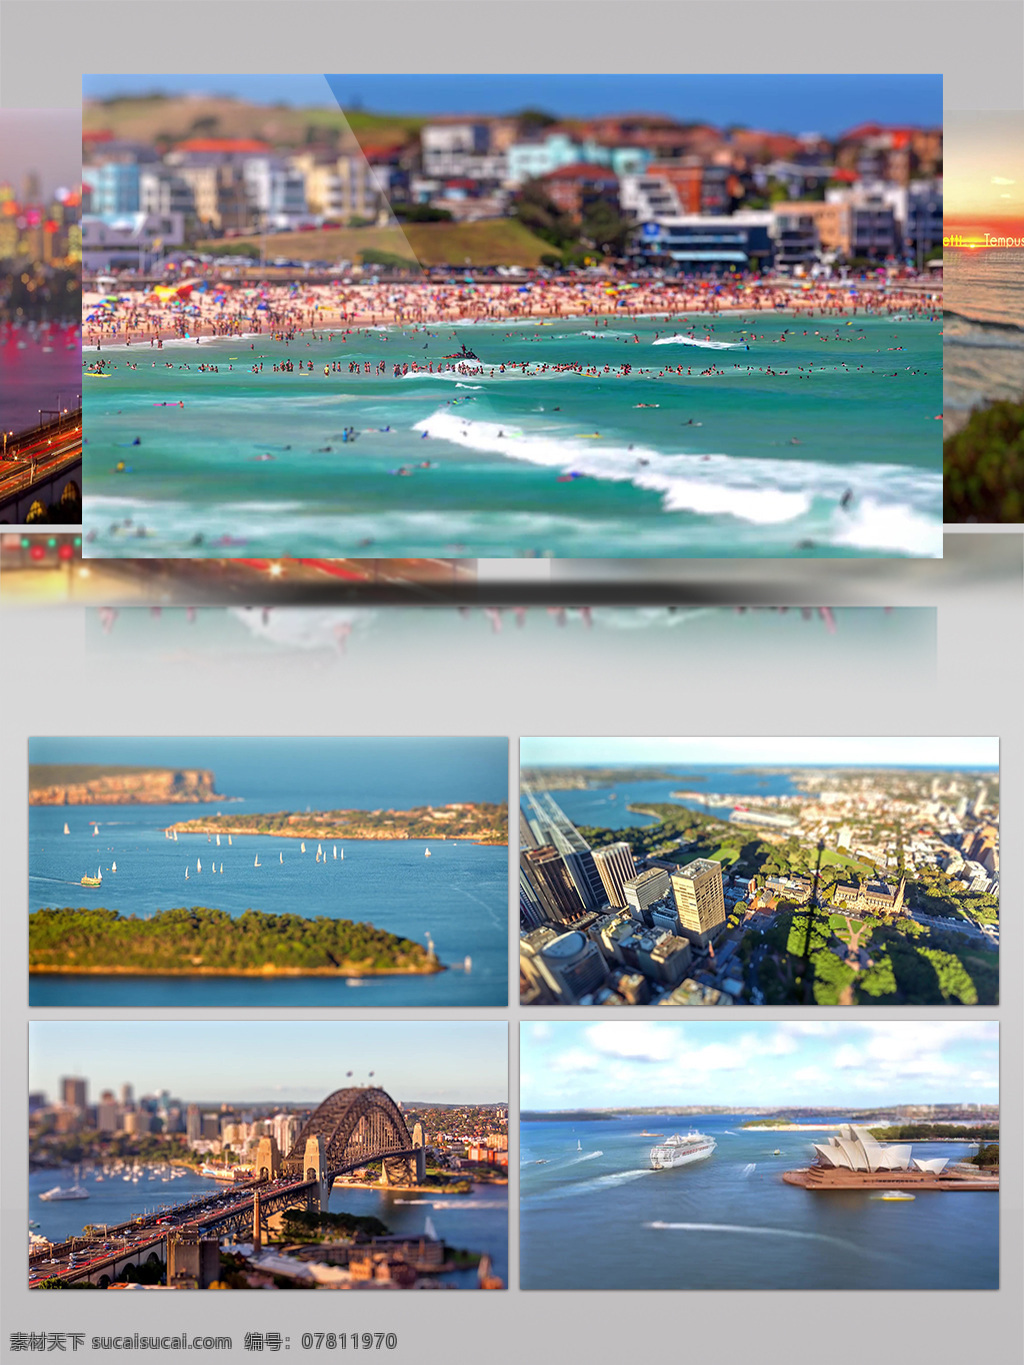 澳大利亚 悉尼 城市 风情 人文地理 城市风情 旅游 风光 人文 生活 延时摄影 船只 轮船 沙滩 海边 海岸 大海 游泳 蓝天白云 度假